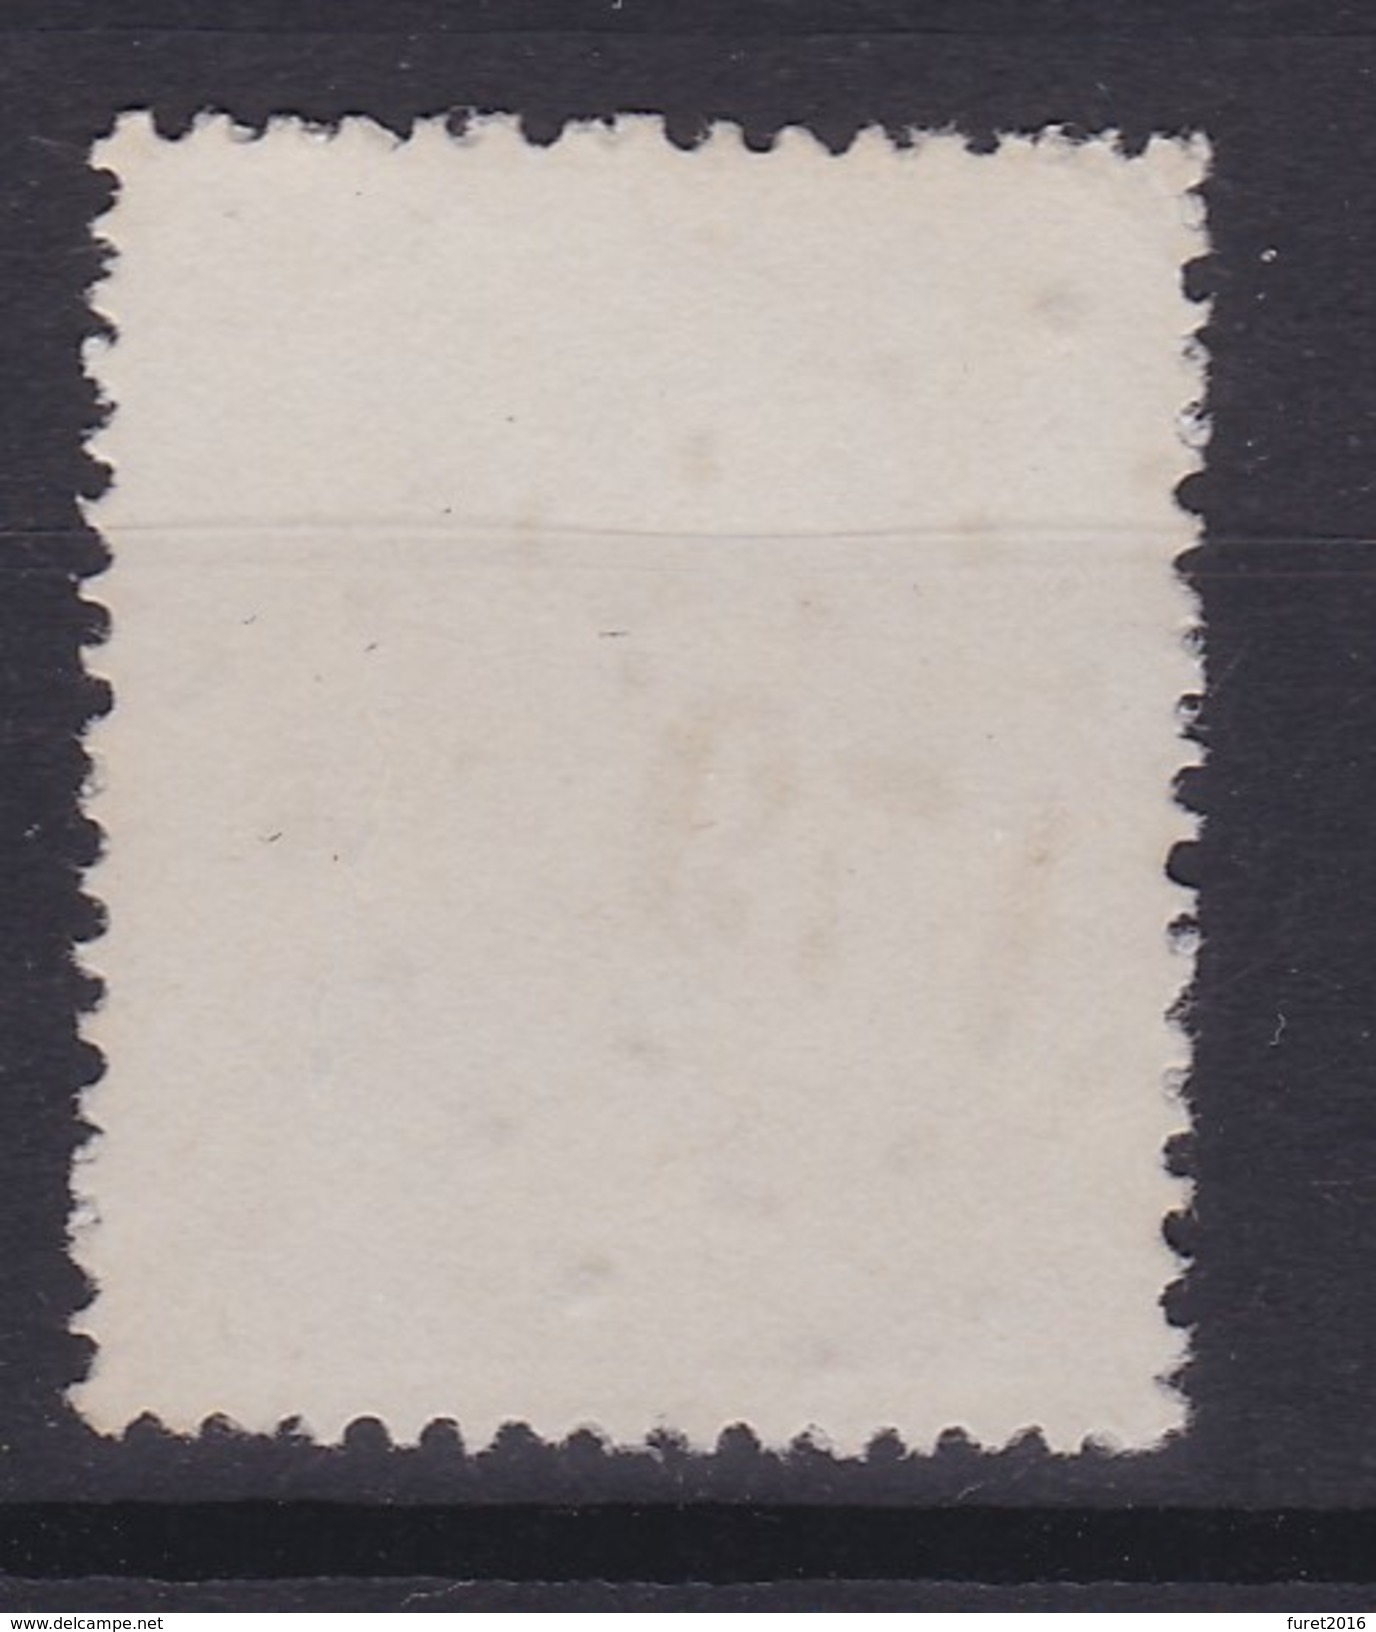 N° 17 LP 179 HERVE - 1865-1866 Perfil Izquierdo